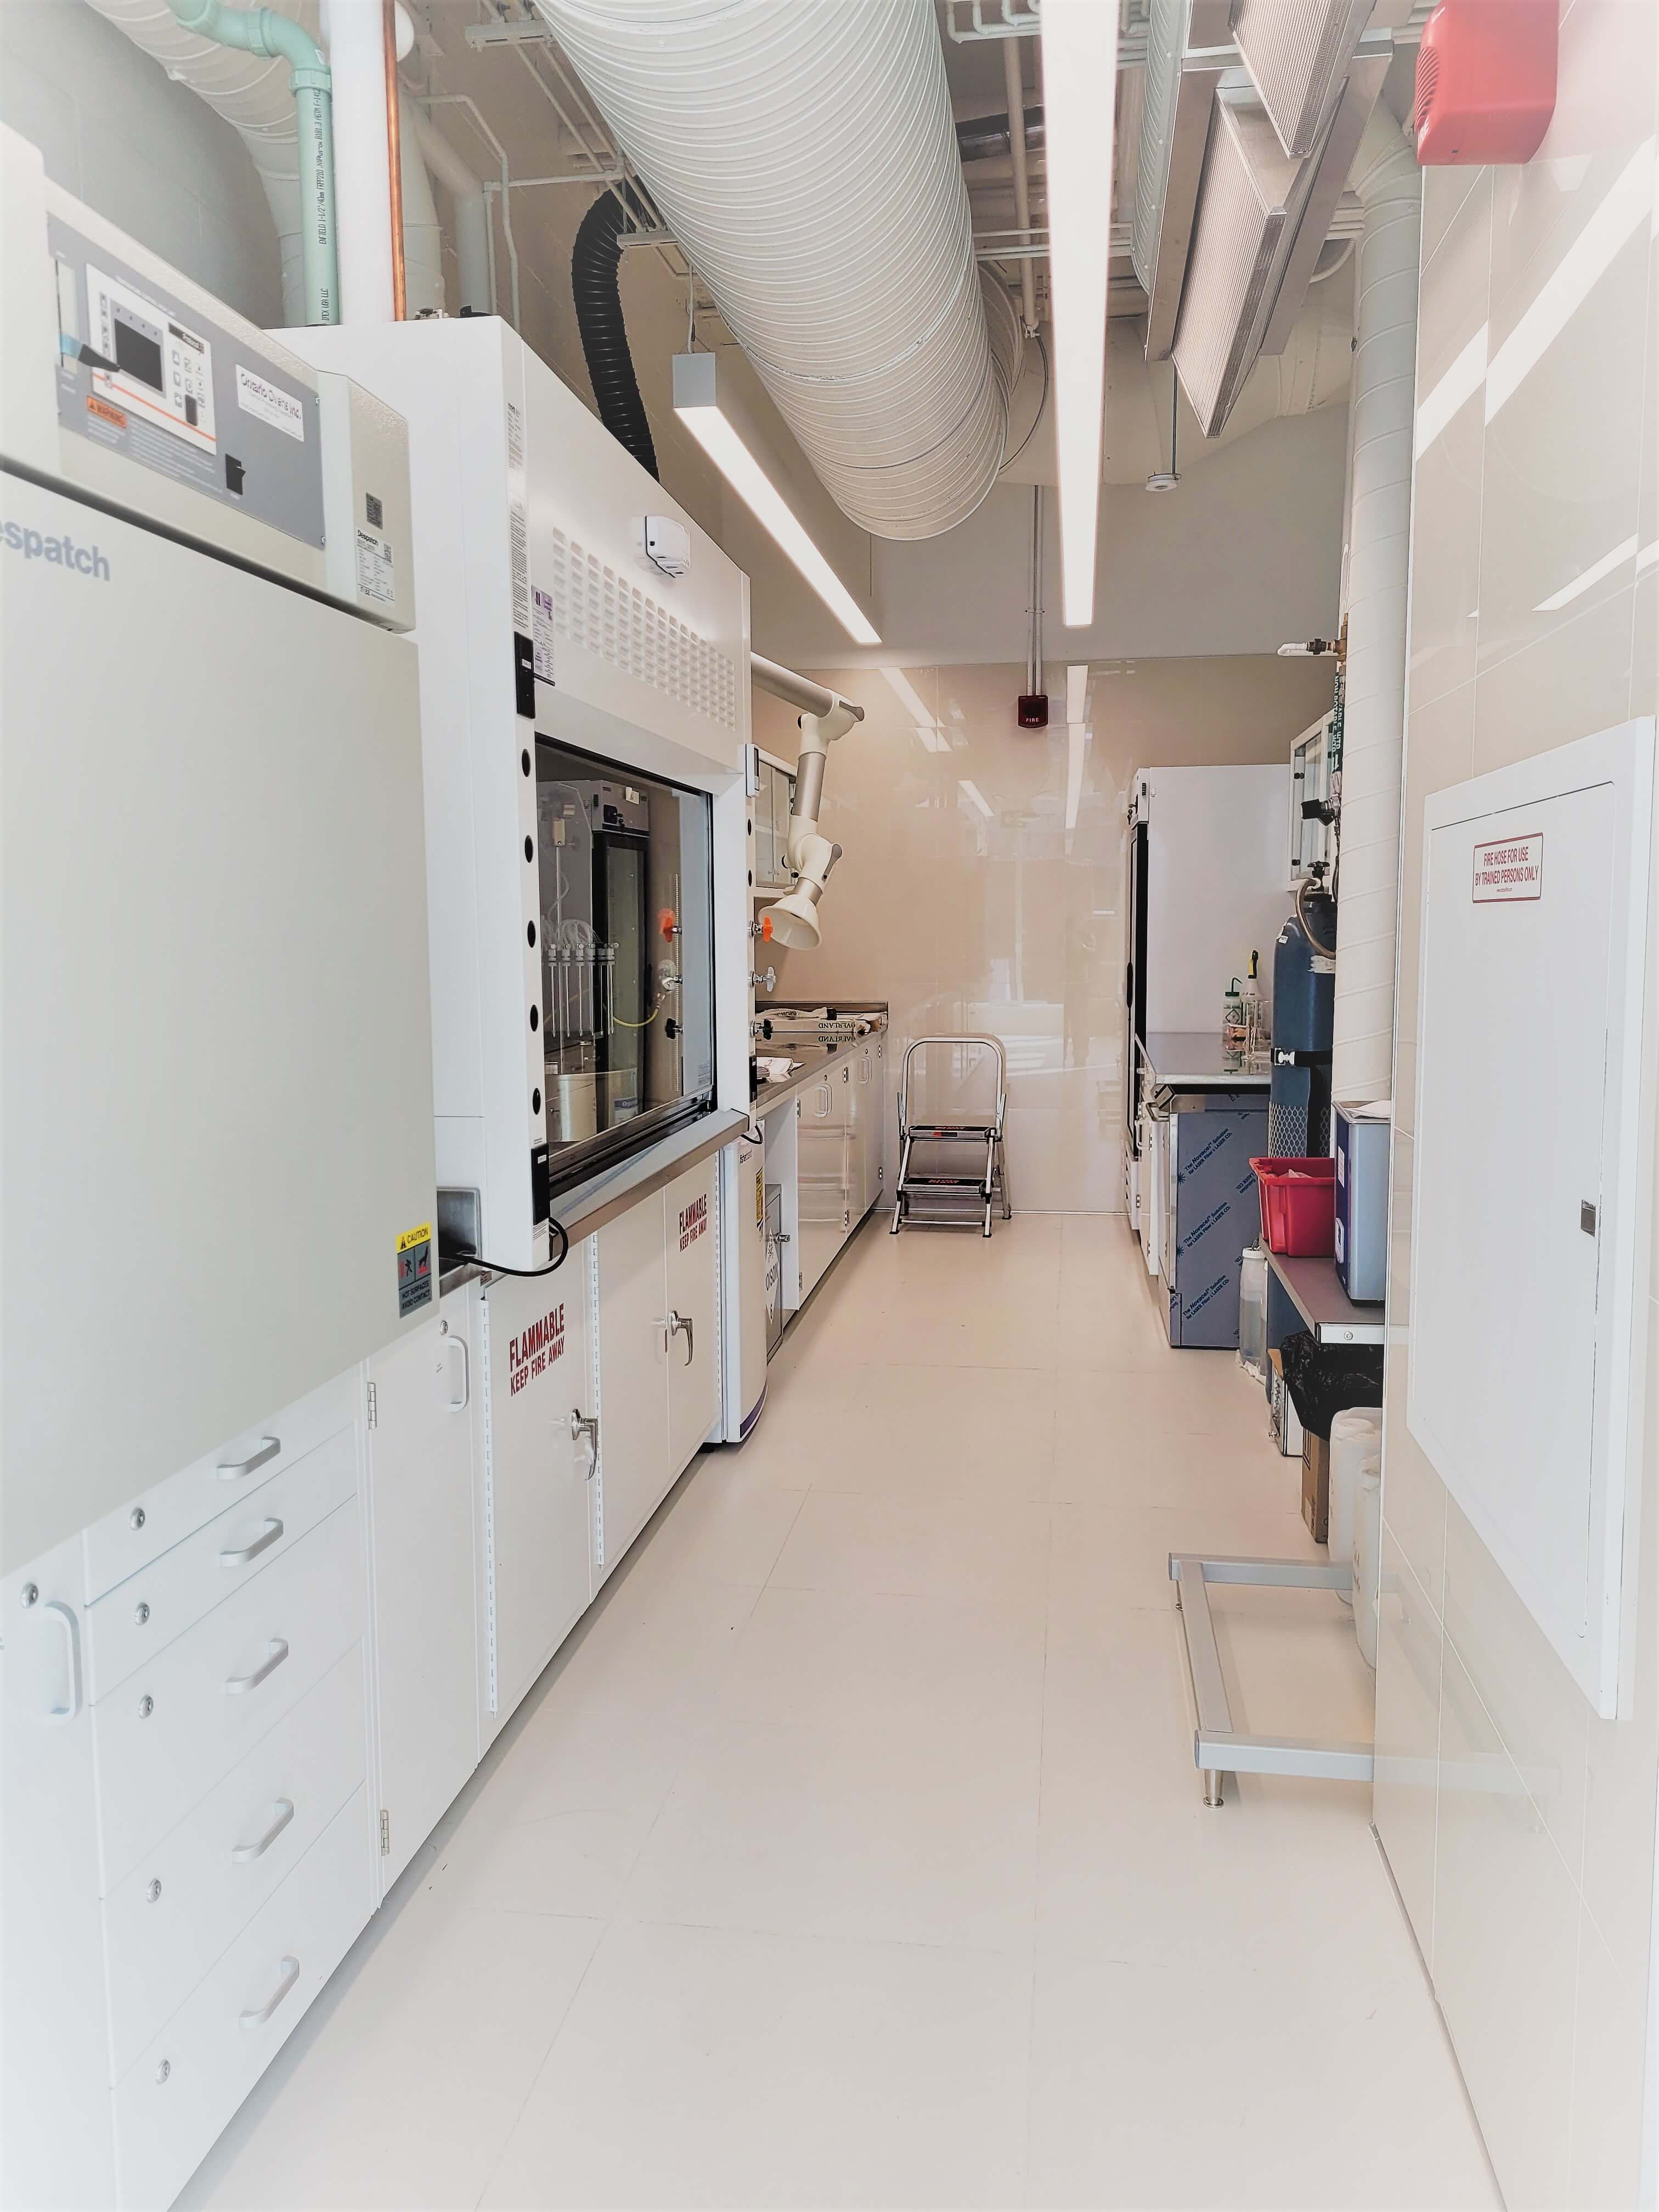 Interior of EC lab with lab equipment